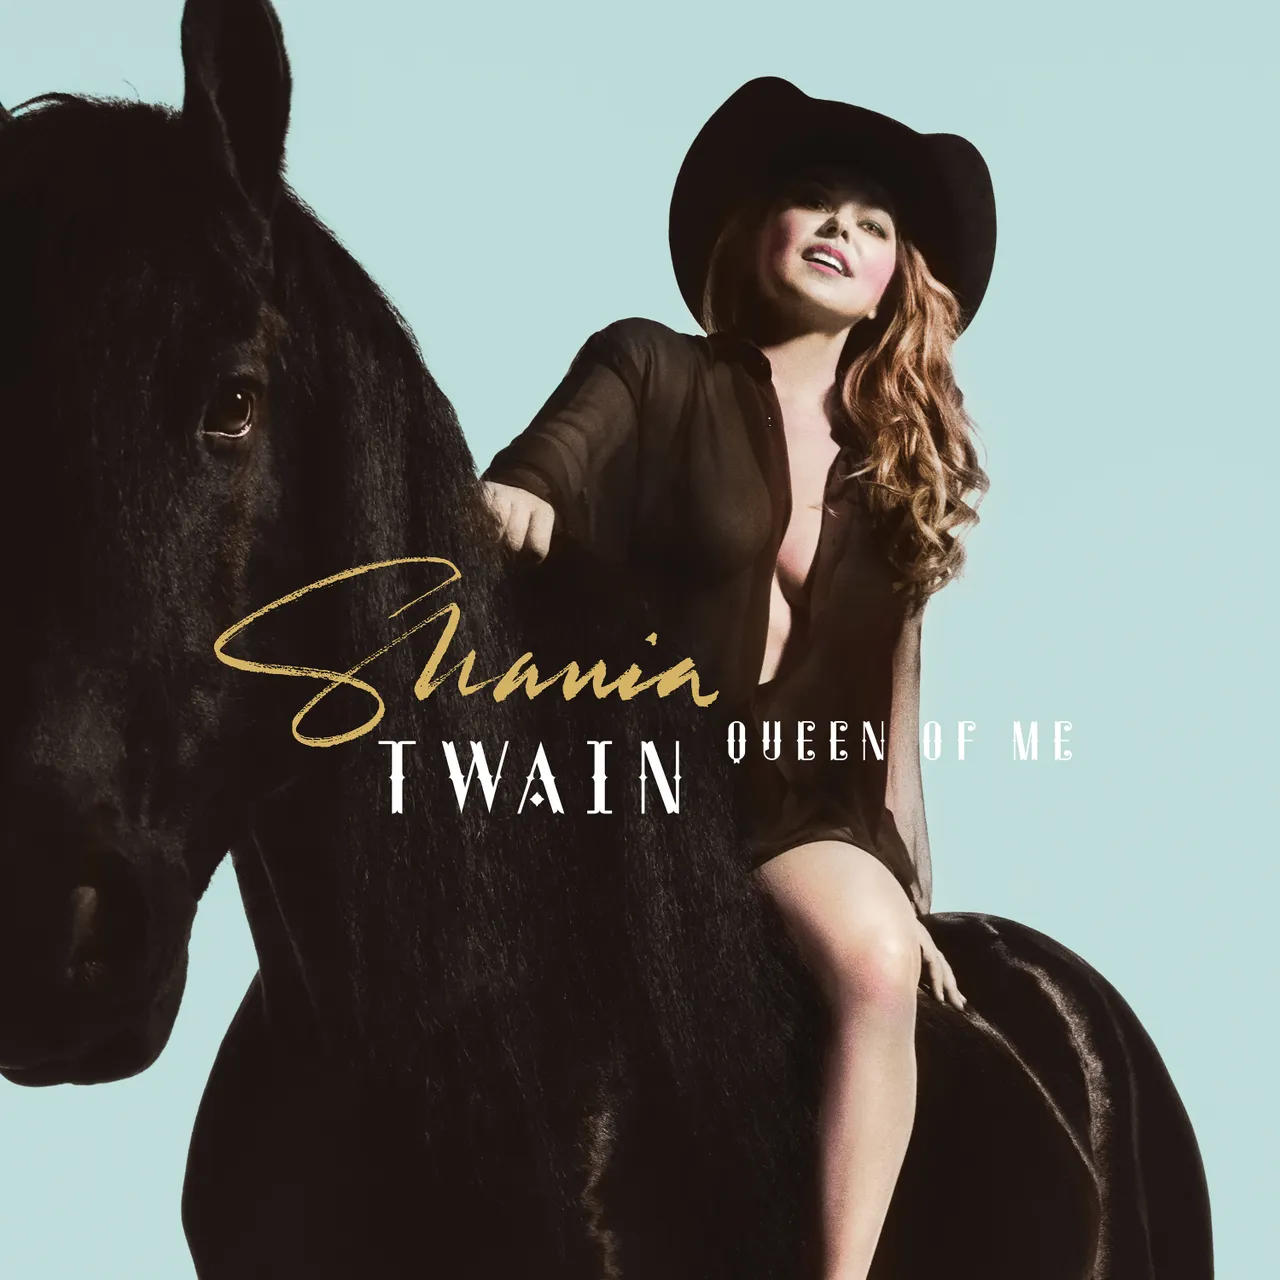 Of Me (Vinyl) Twain Shania - - Queen